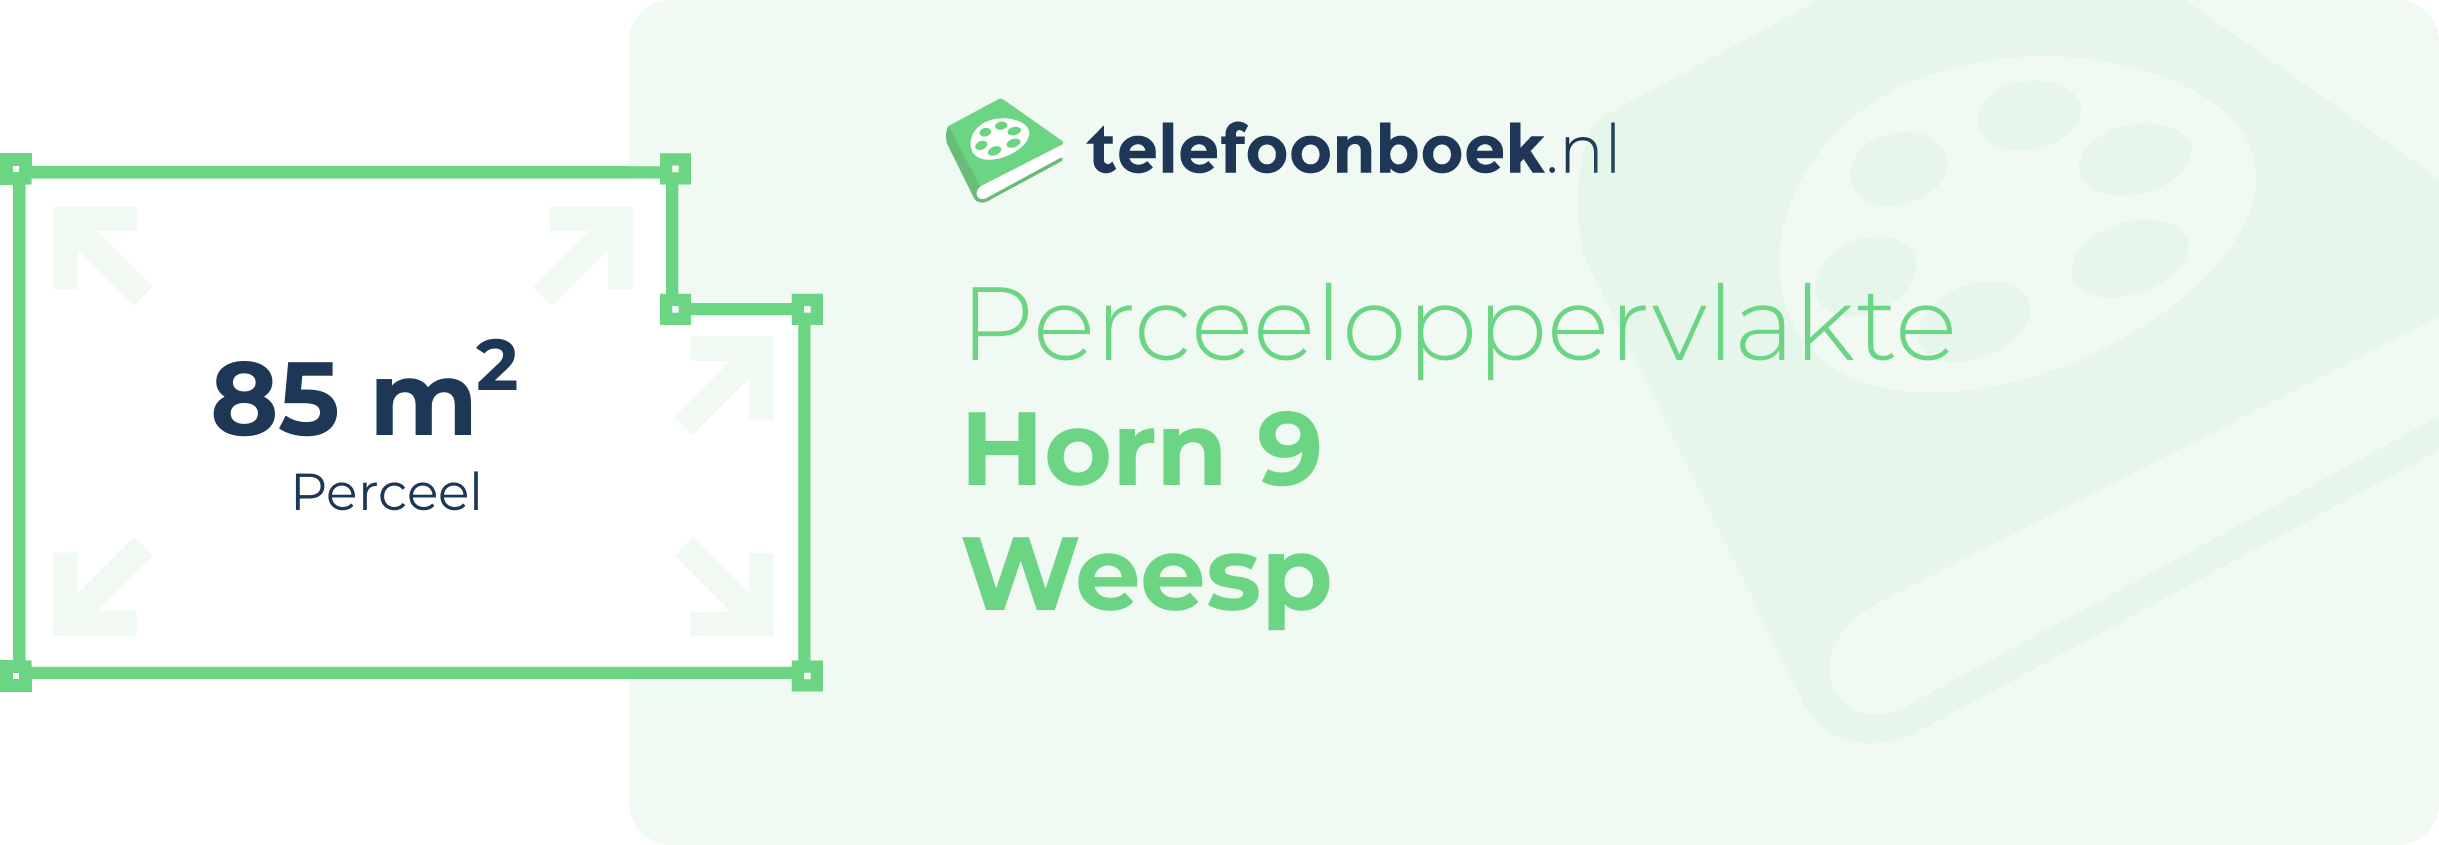 Perceeloppervlakte Horn 9 Weesp